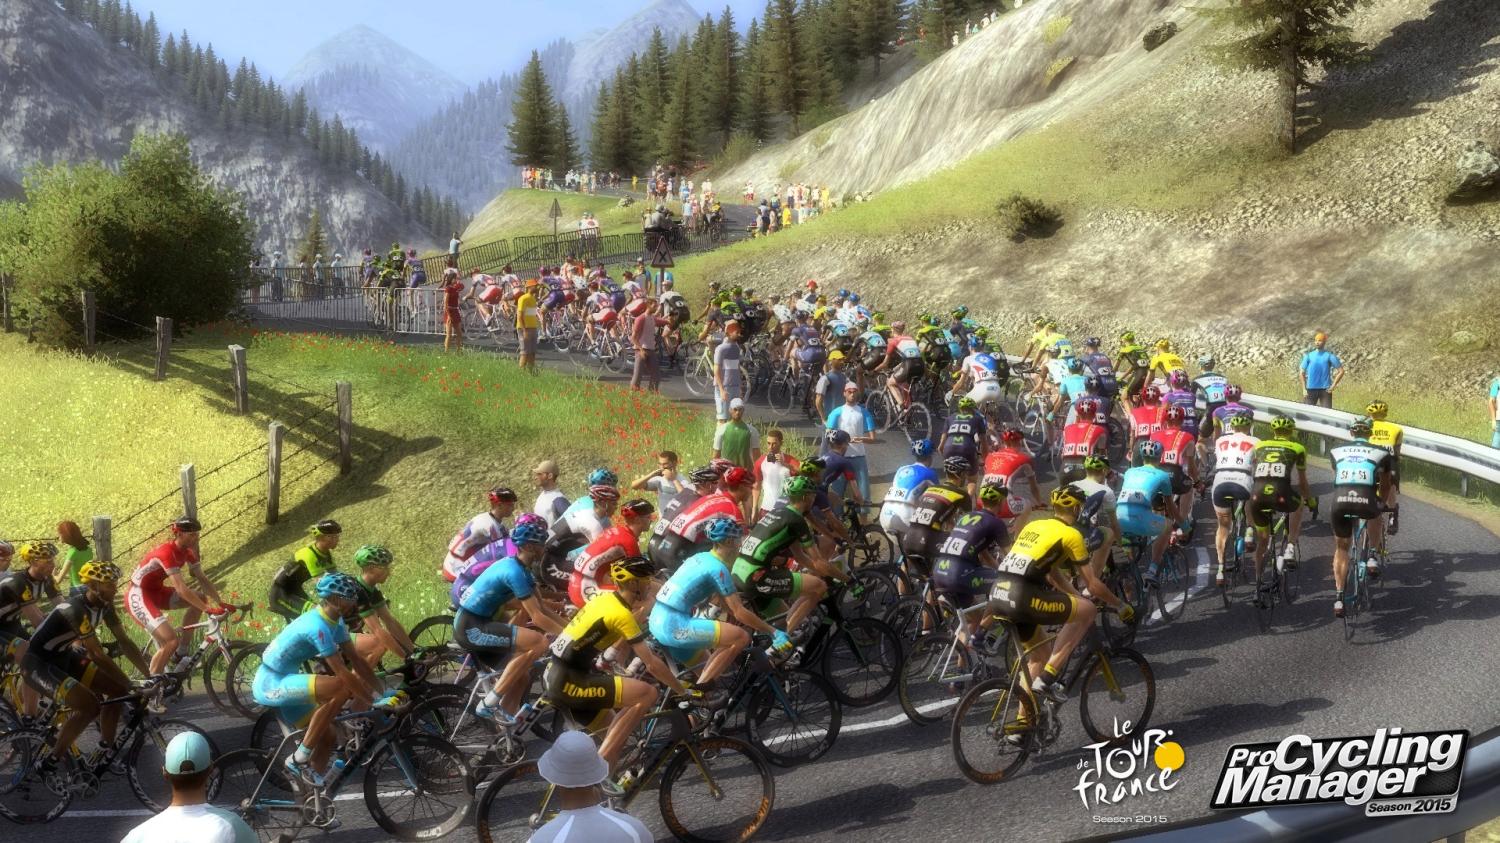 Tour-de-France-2015-Reveals-First-Screenshots-Arrives-in-June-479704-3.jpg